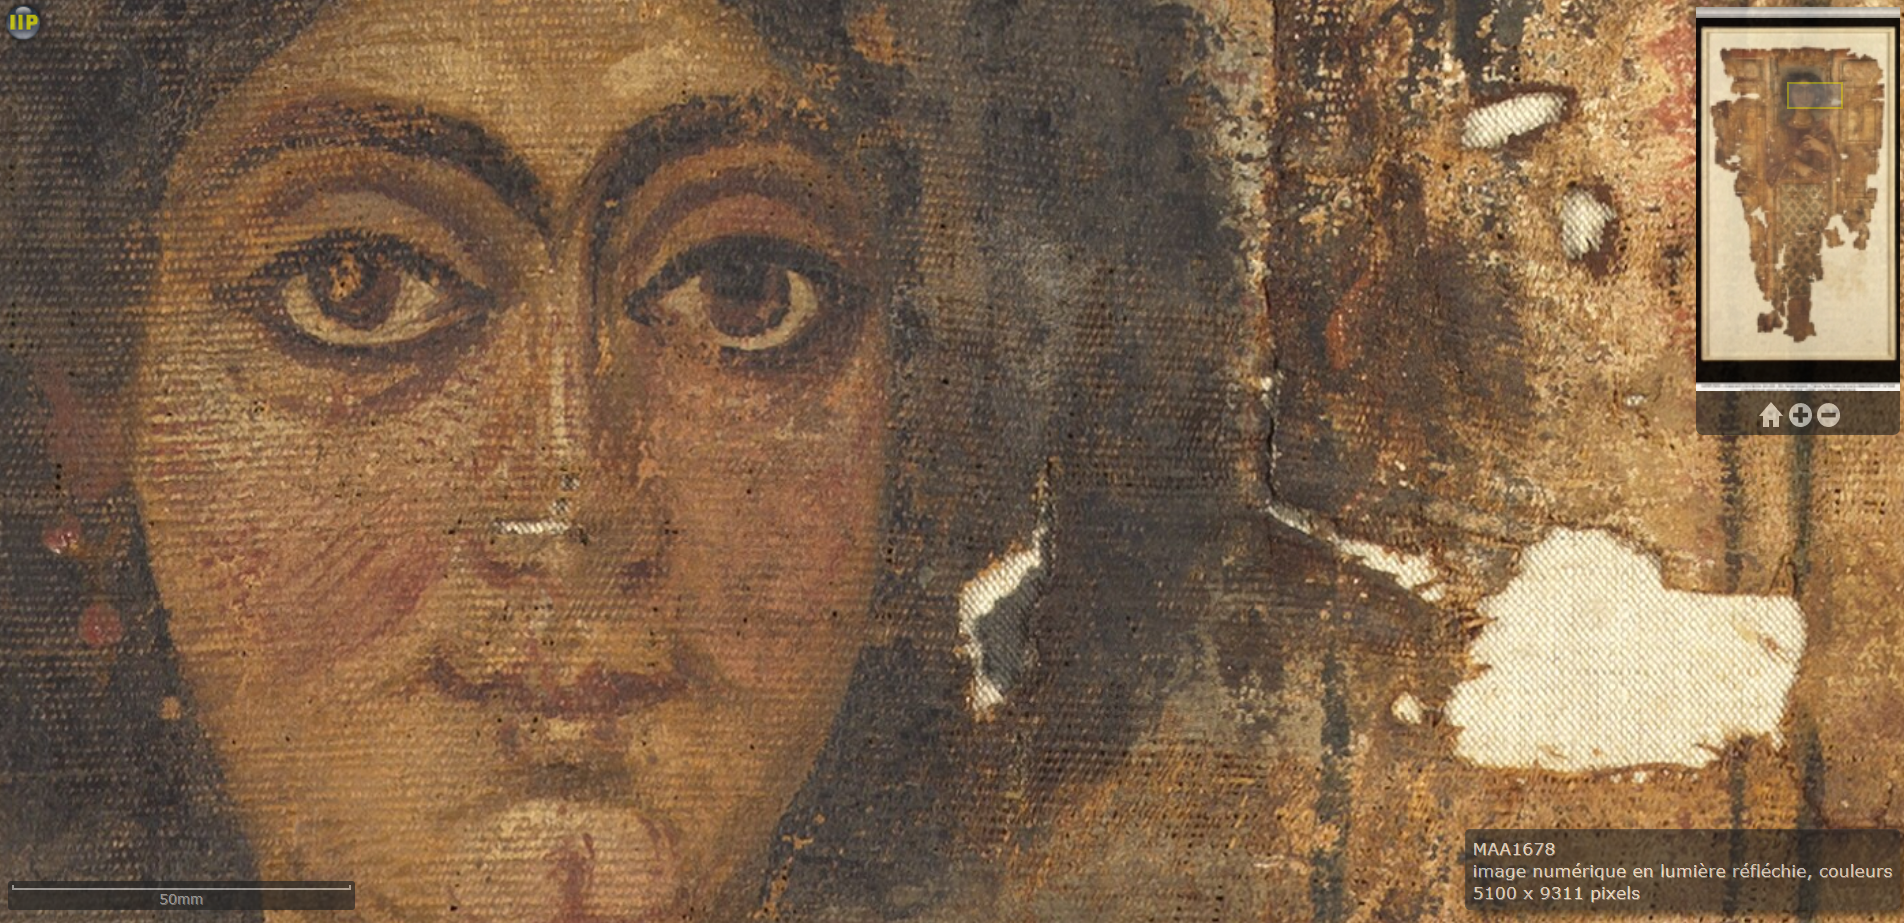 Linceul de femme (musée du Louvre, département des antiquités grecques, étrusques et romaines), détail